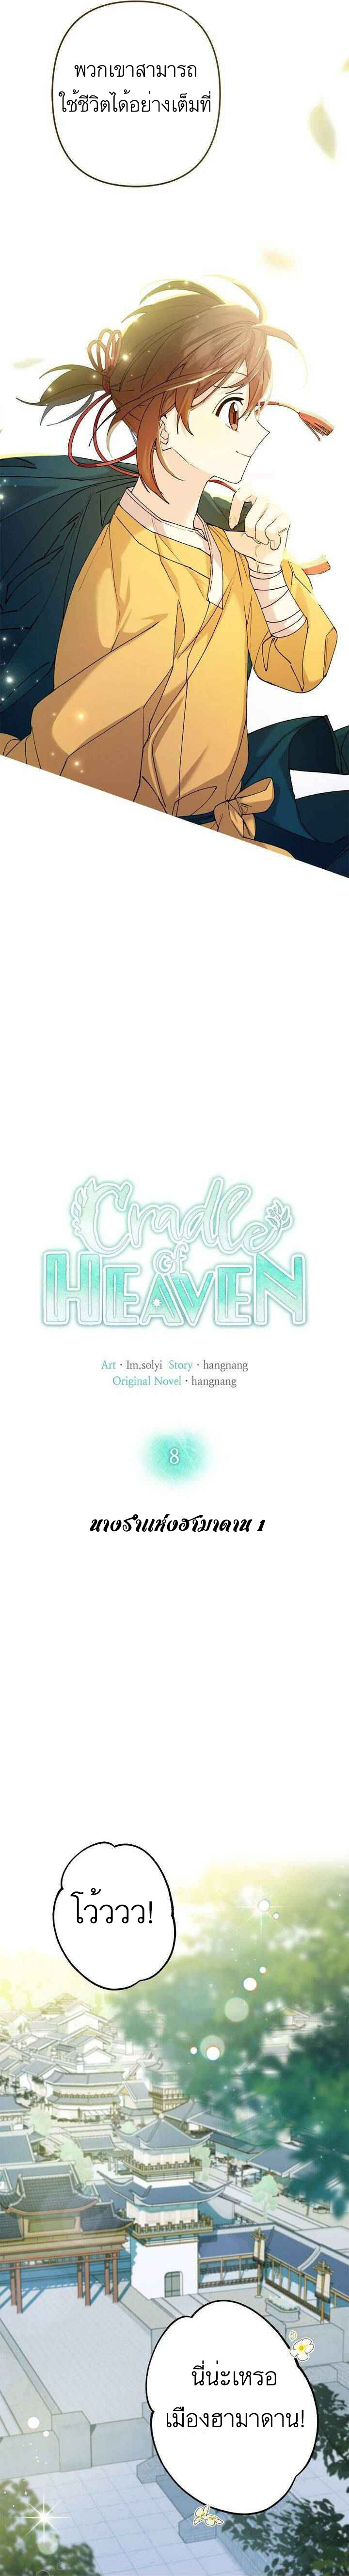 Cradle of Heaven 8 12